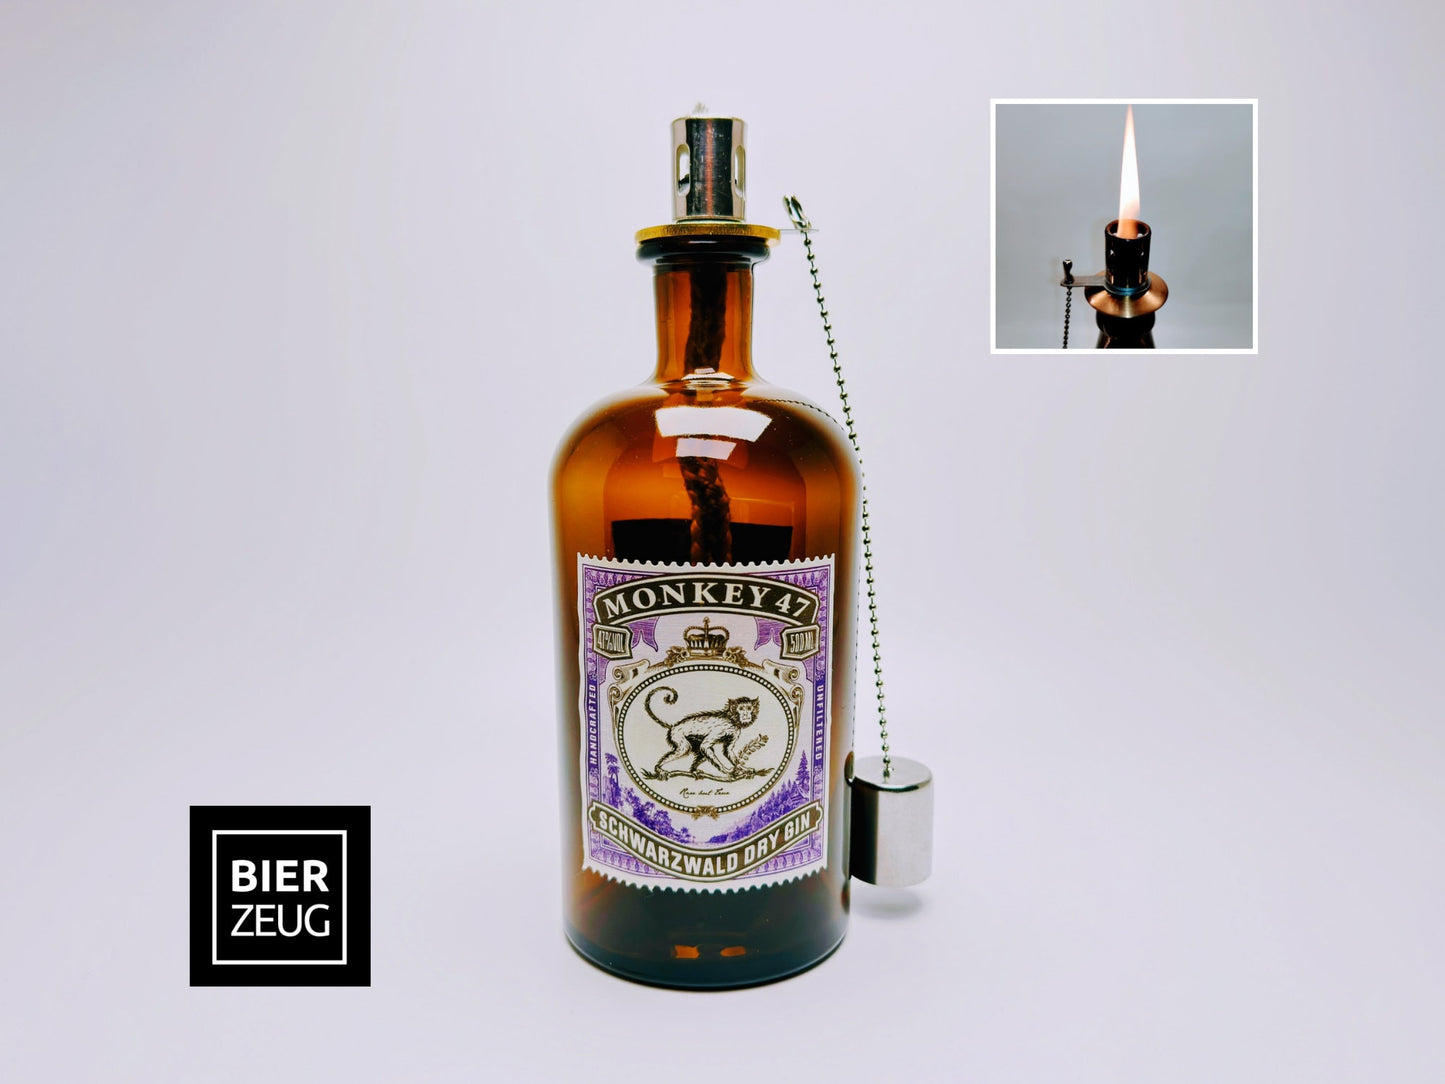 Gin Öllampe "Monkey 47" | Handgemachte Öllampe aus Monkey 47 Flaschen | Upcycling | Handgefertigt | Individuell | Geschenk | Deko | H:21cm